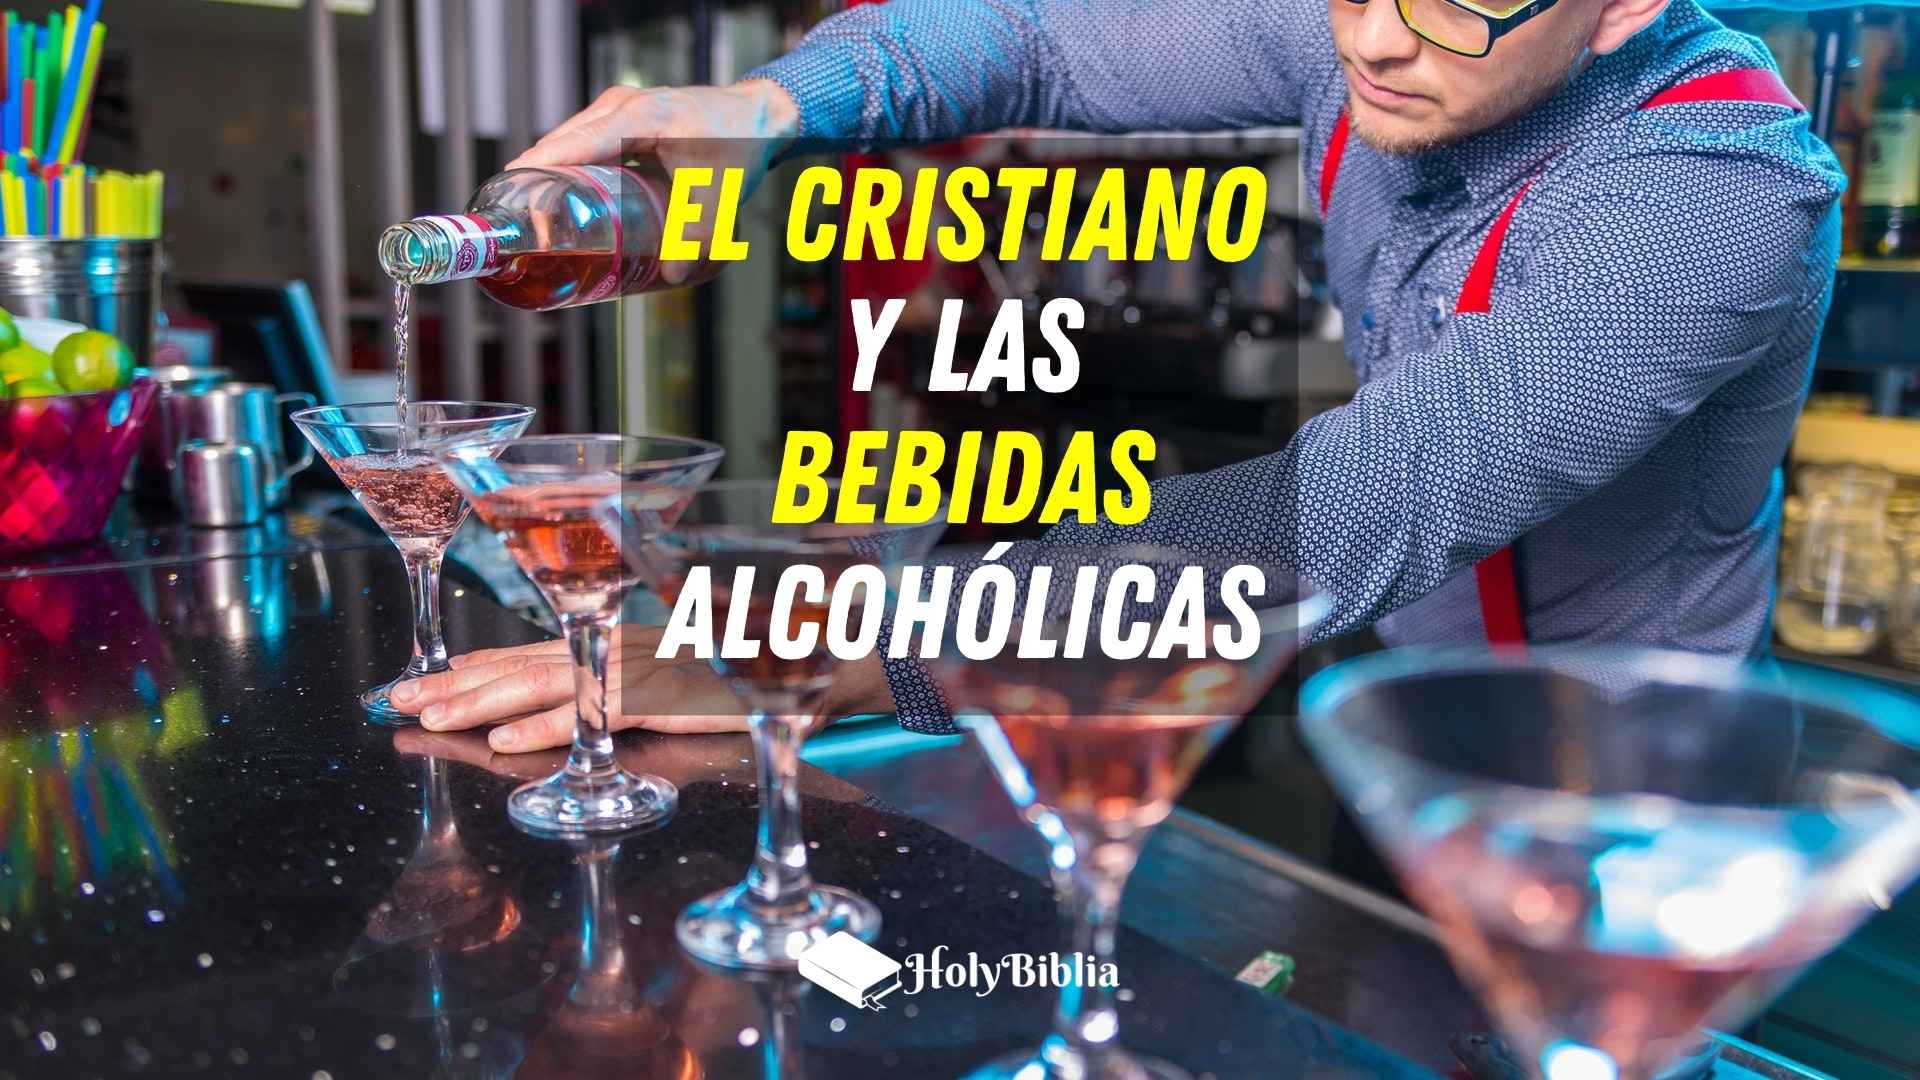 El cristiano y las bebidas alcohólicas